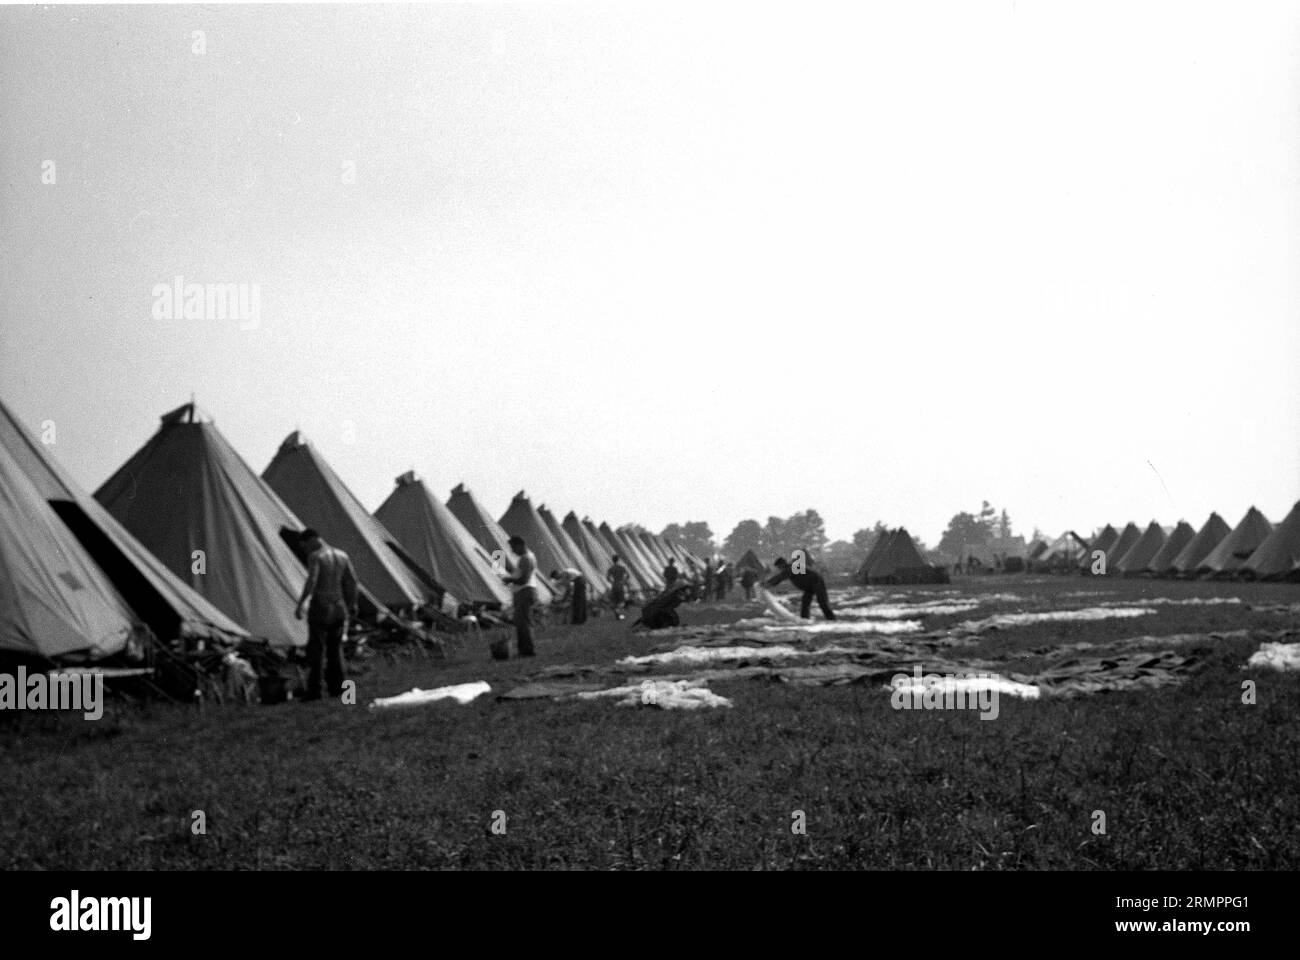 Soldats à l'extérieur des tentes. Les membres de la 114e division d’infanterie de l’armée des États-Unis s’entraînent pour combattre l’Allemagne en Europe pendant la Seconde Guerre mondiale. Banque D'Images